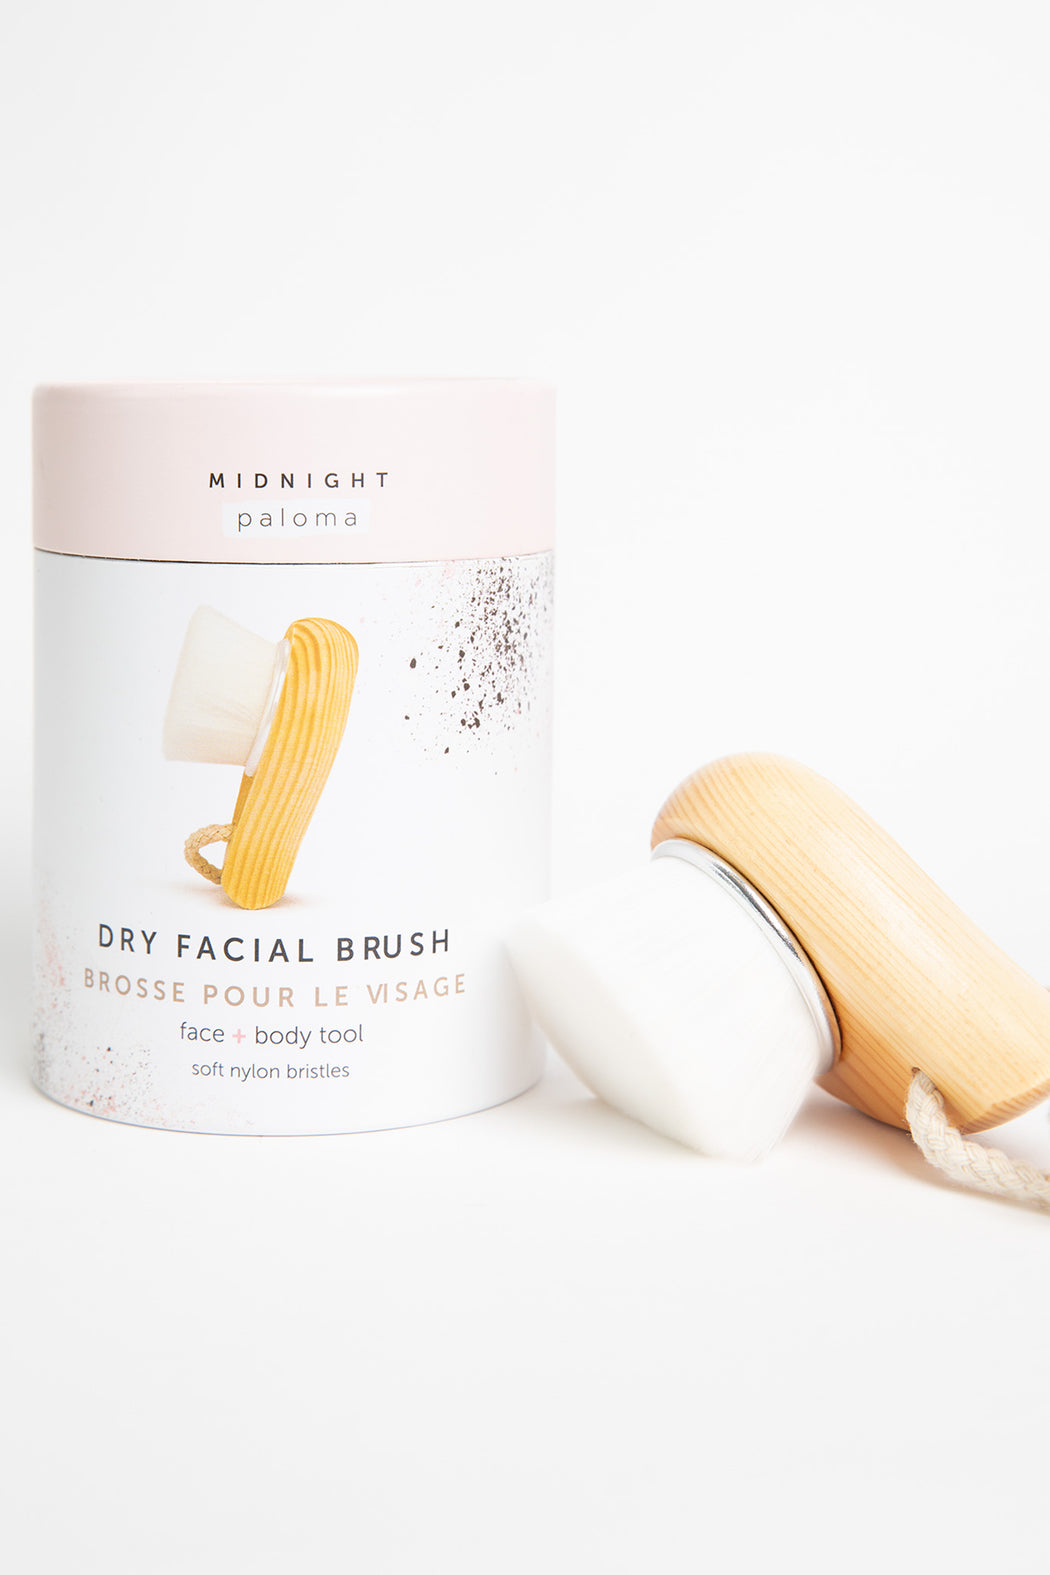 Midnight-Paloma-Facial-Dry-Brush